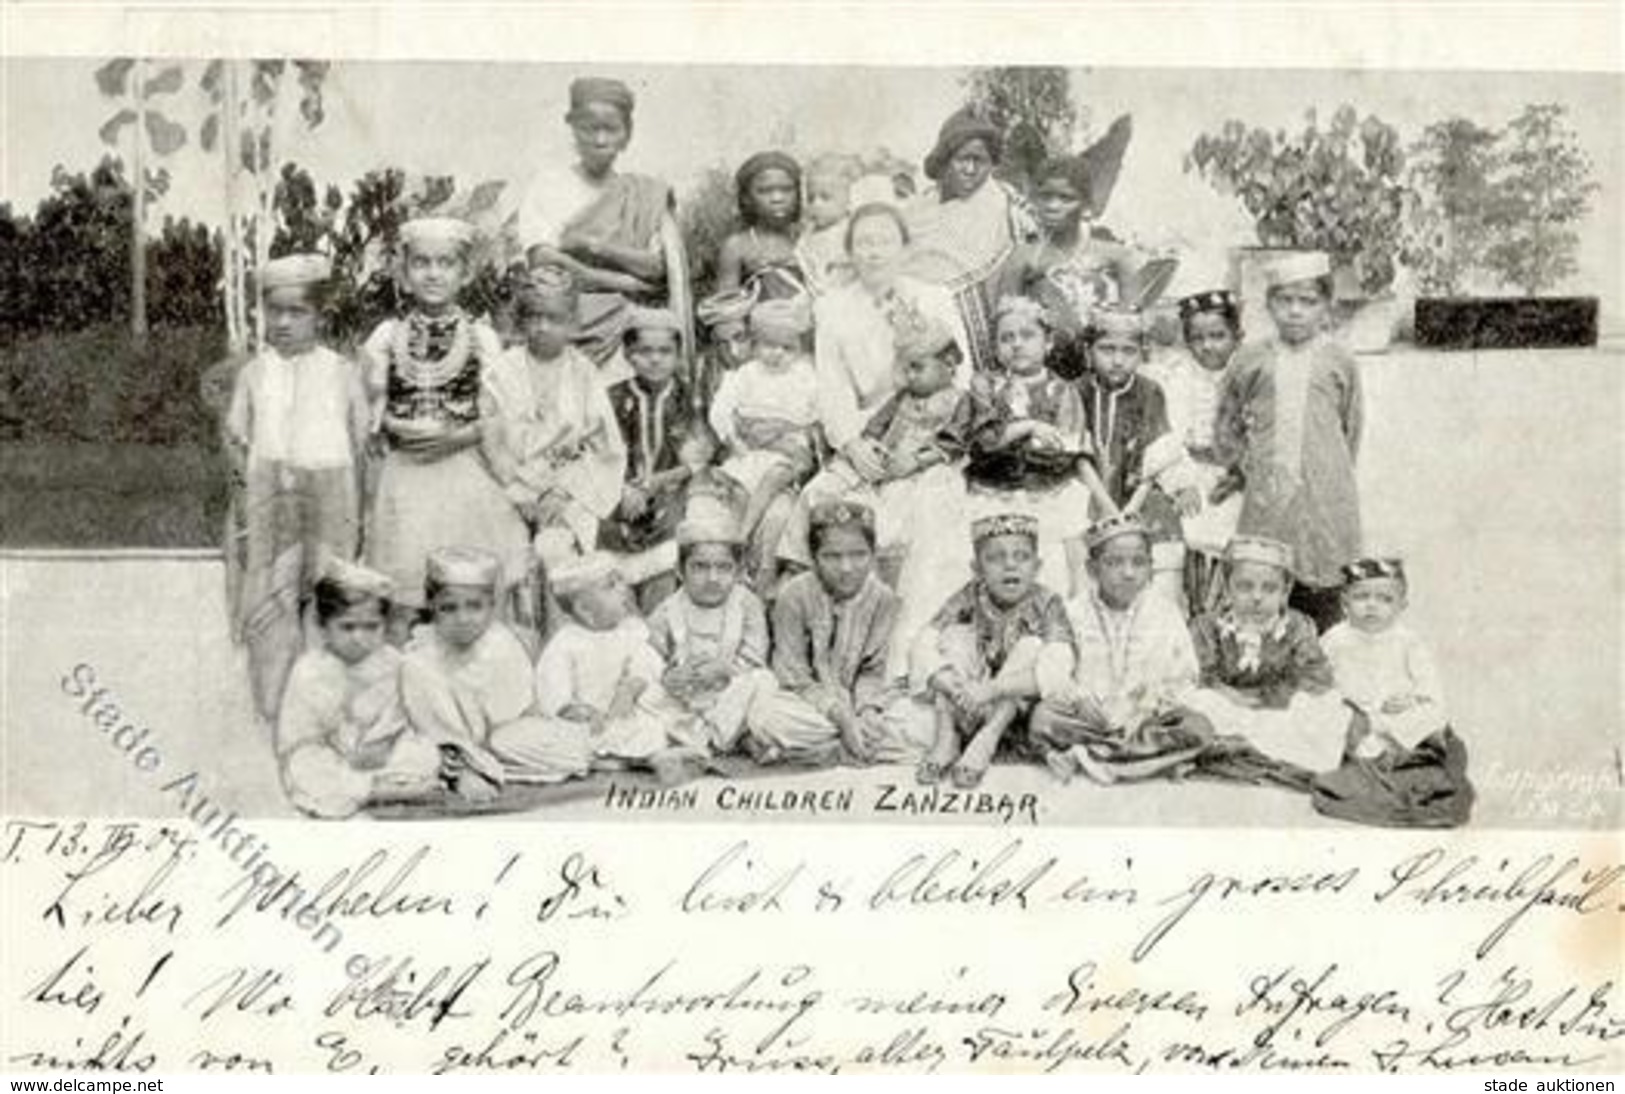 Kolonien Deutsch-Ostafrika Zanzibar Indische Kinder Stpl. Tanga 13.2.04 I-II colonies